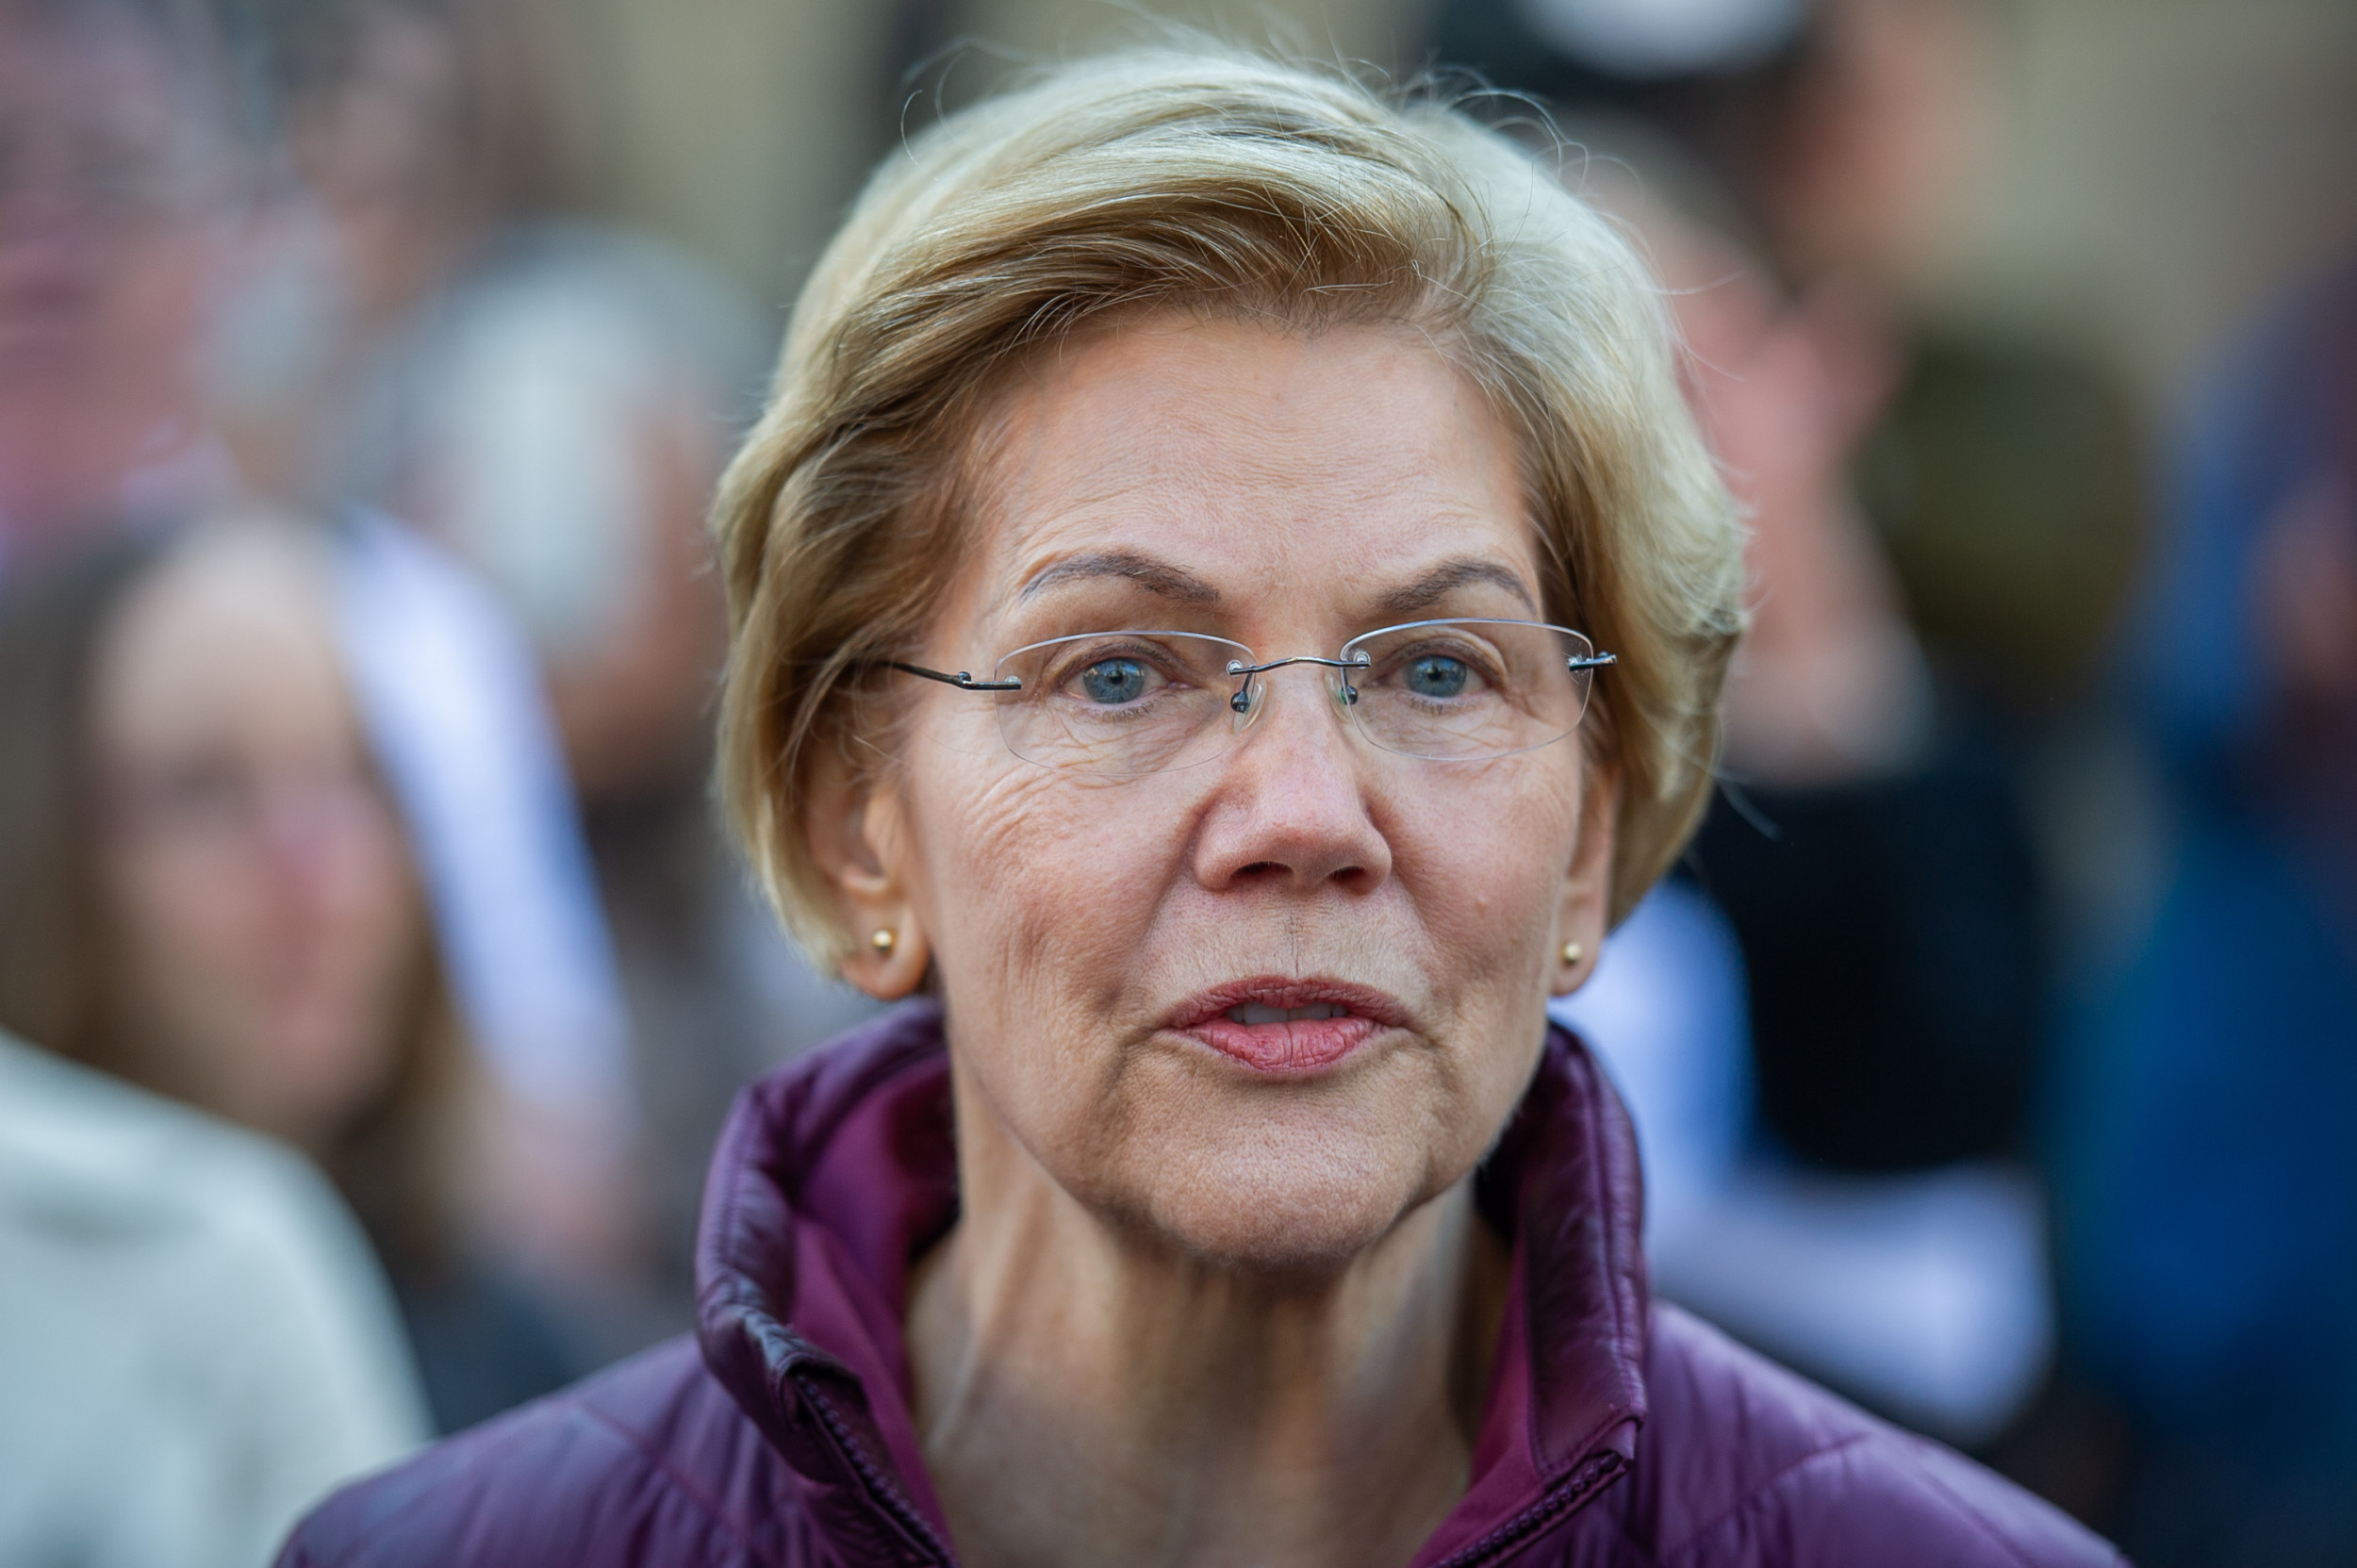 A Warren na imprensa: saiba como nos destacamos em 2020